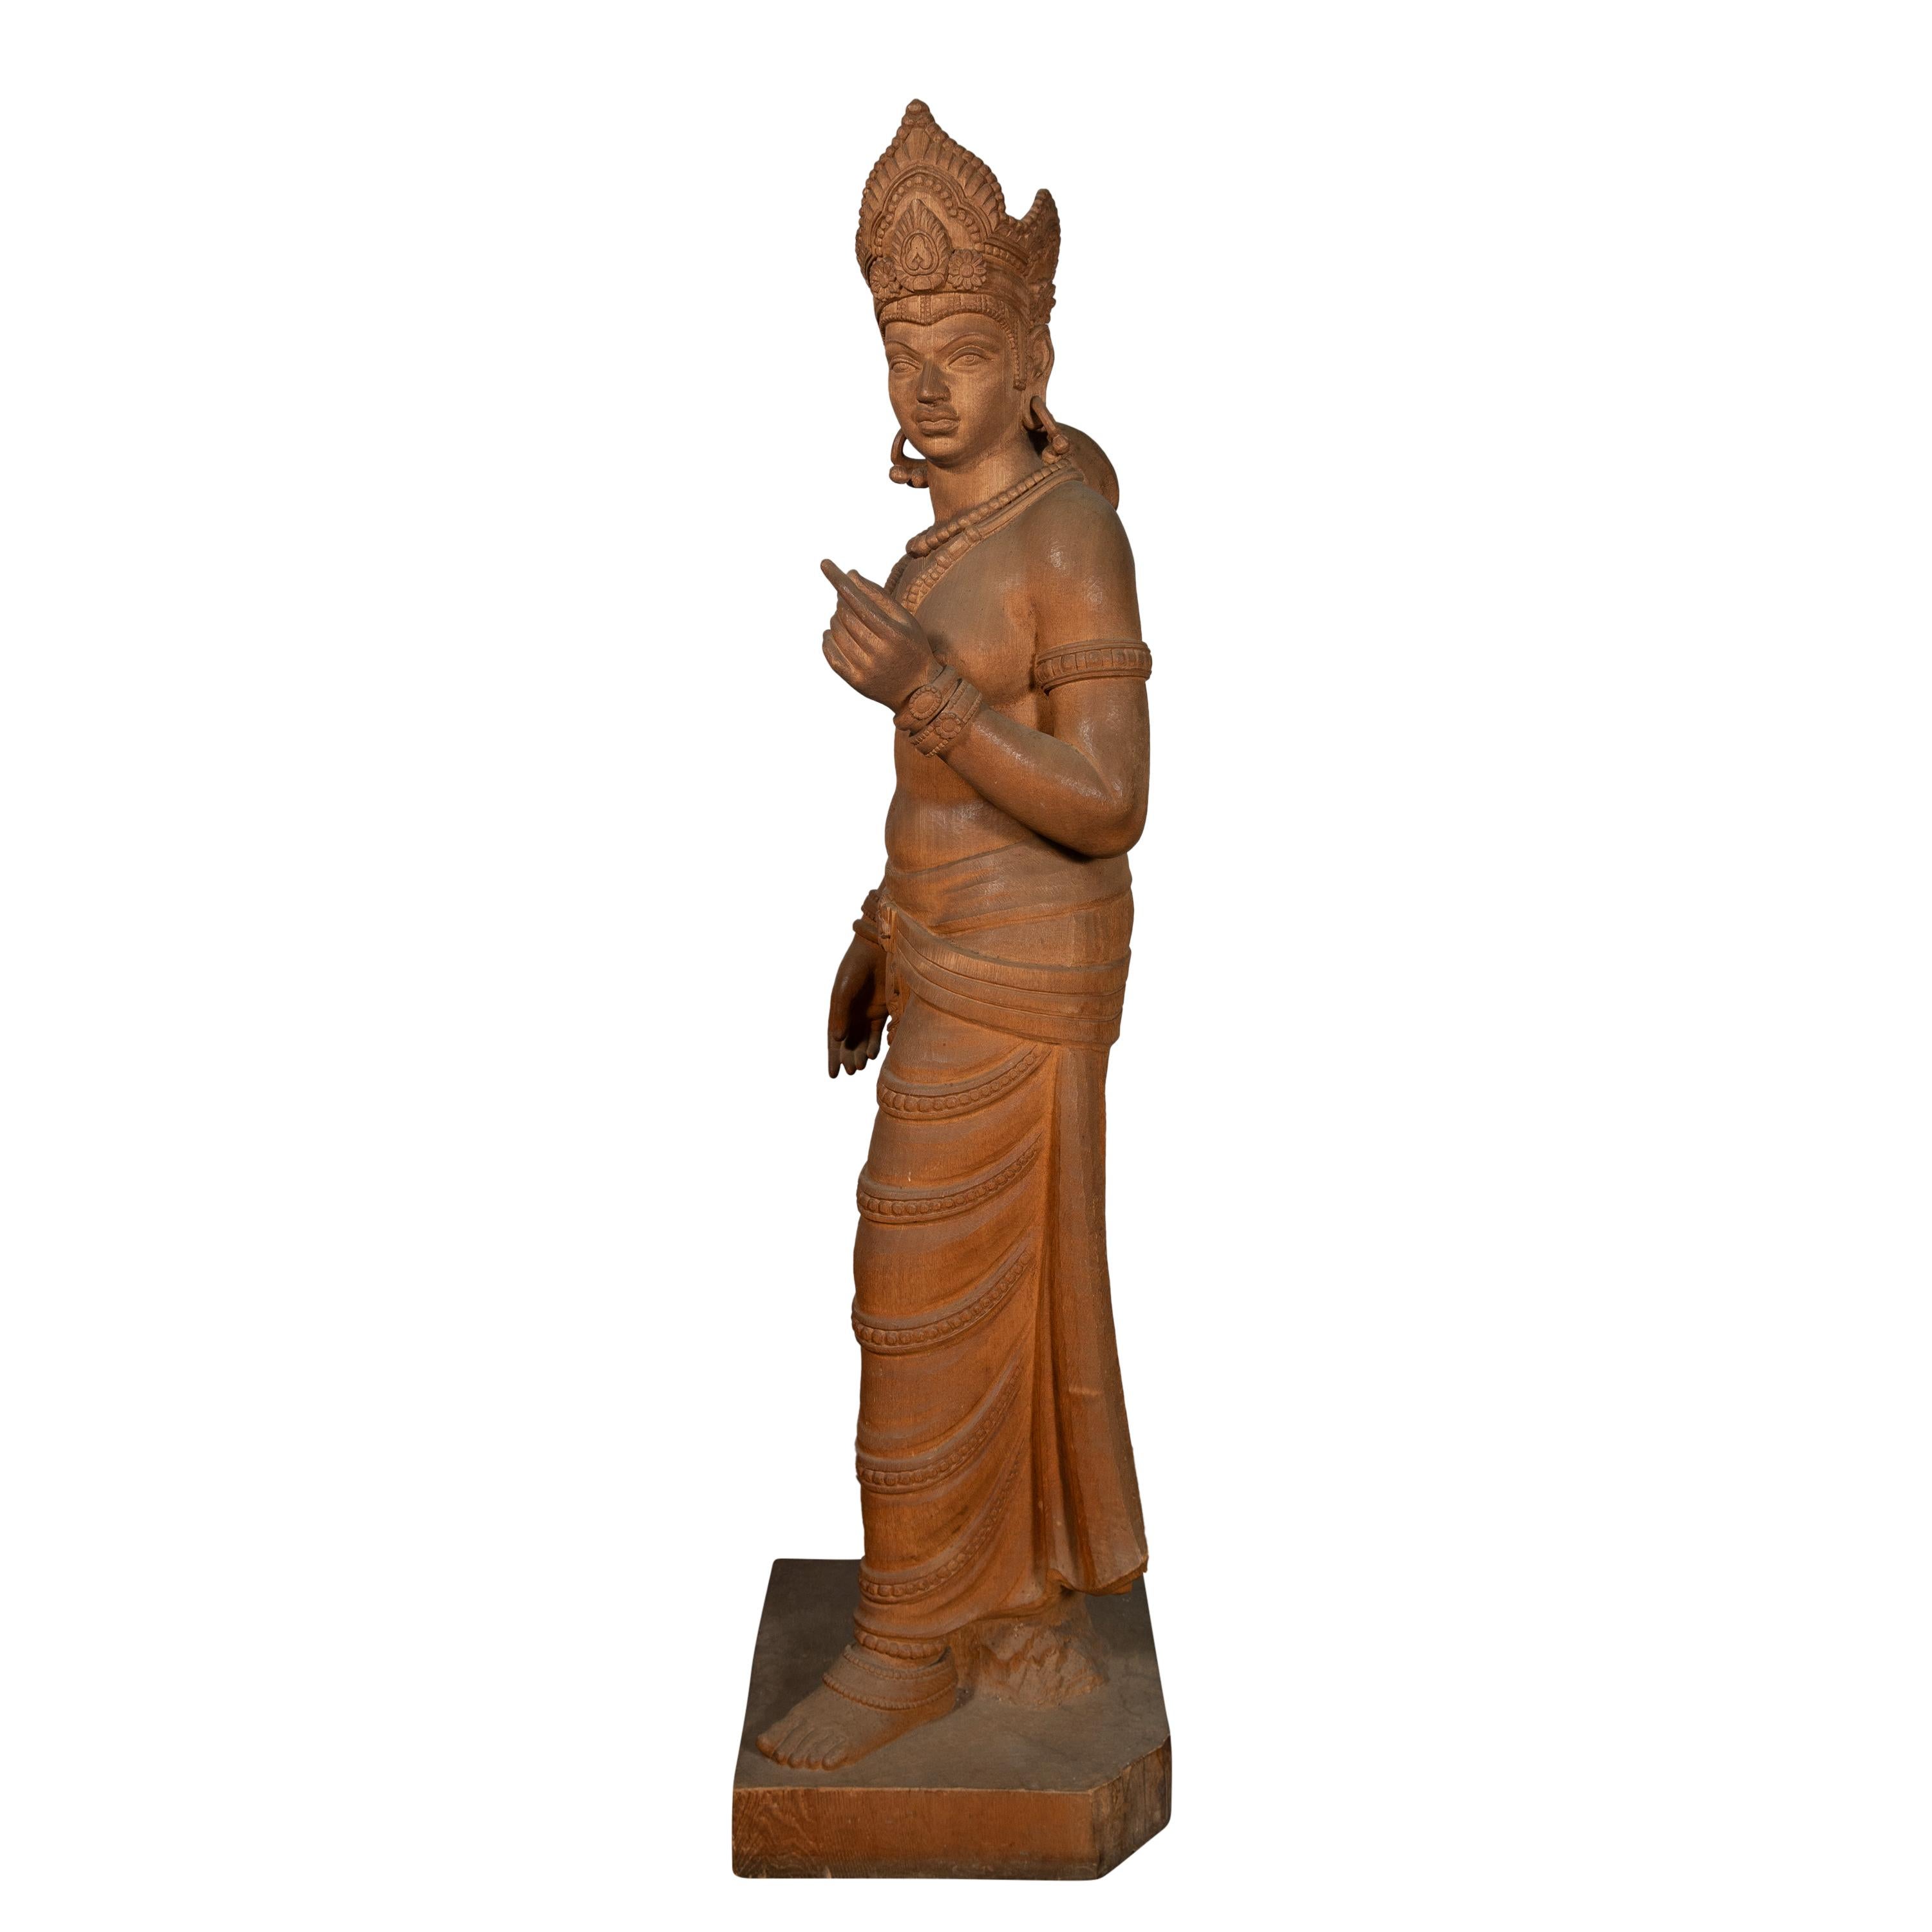 Eine lebensgroße geschnitzte Holzskulptur der Hindu-Göttin Parvati. Parvati, die Gemahlin von Lord Shiva, wird in der hinduistischen Mythologie oft als Symbol für göttliche Kraft, Liebe und Fruchtbarkeit dargestellt.

Die Skulptur stellt die Göttin